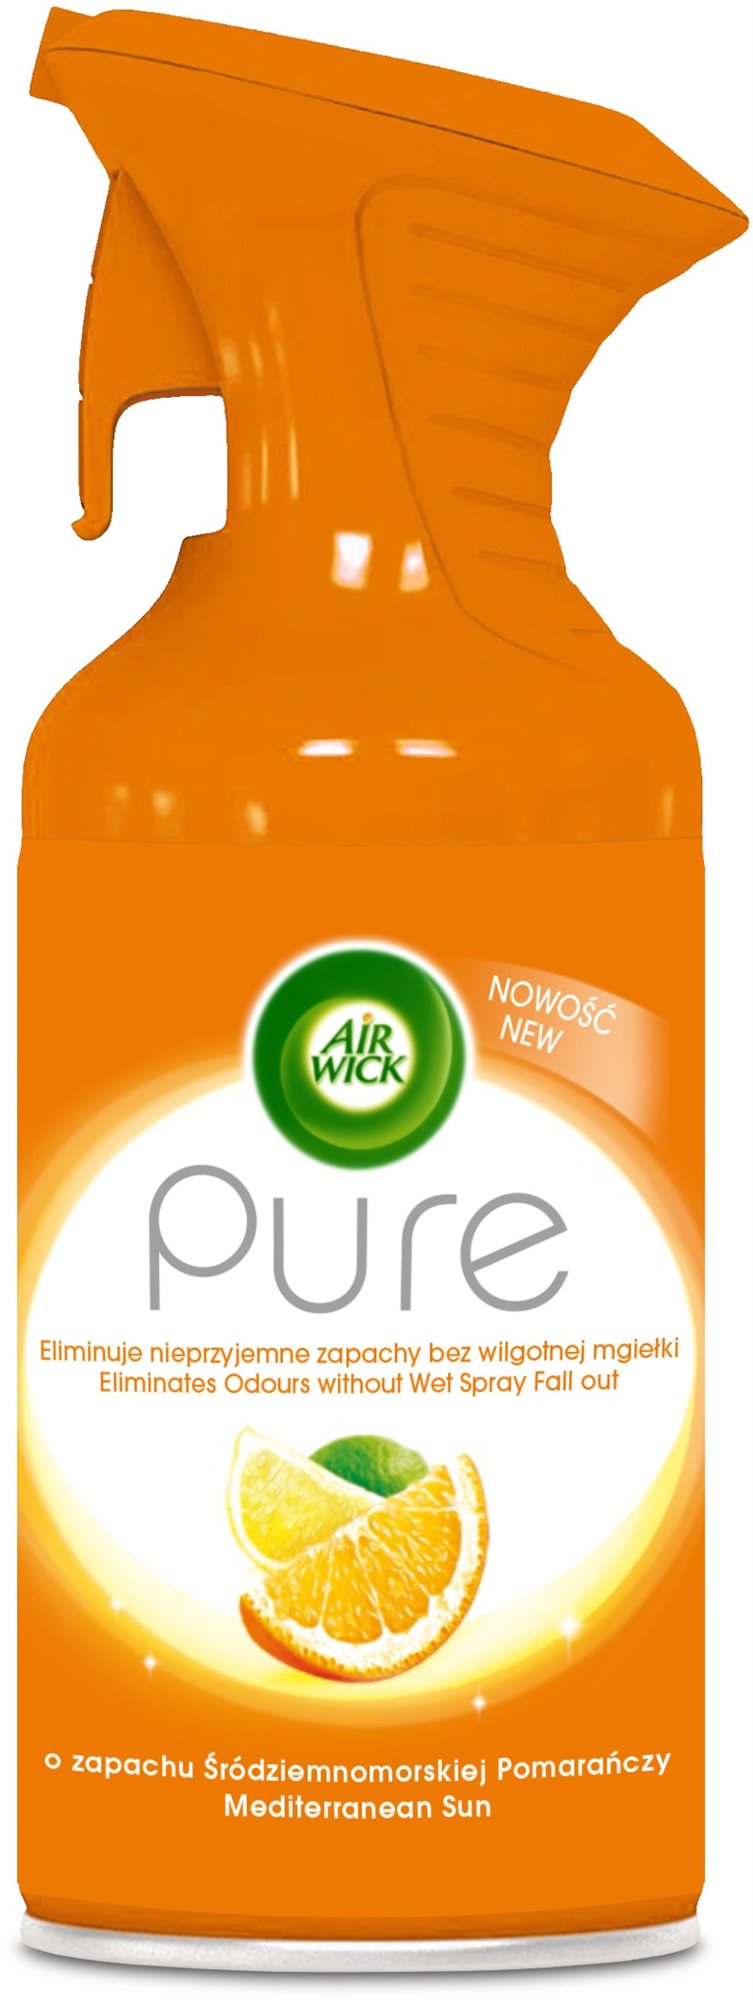 AIR WICK Pure légfrissítő - Mediterrán nyár 240 ml